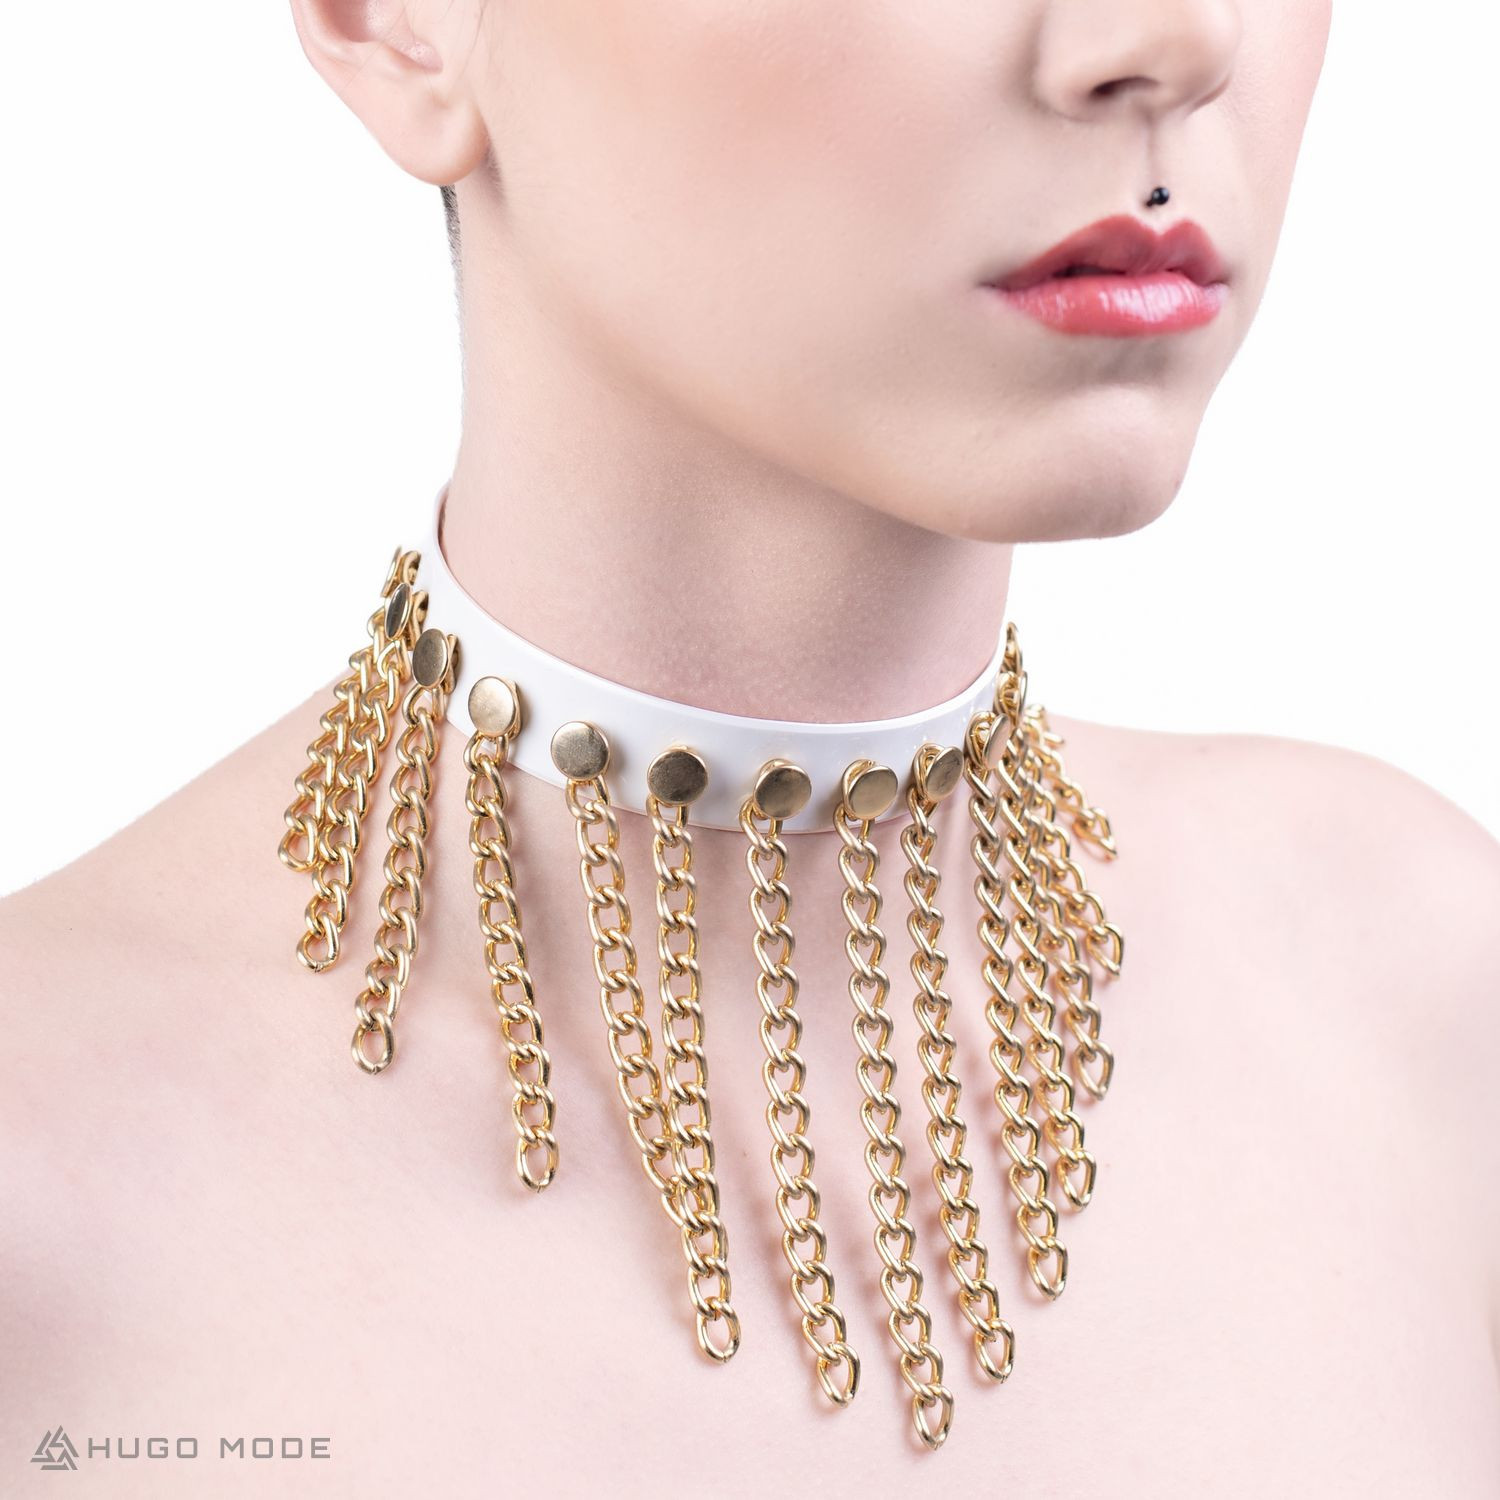 Ein weißes Choker Halsband verziert mit goldenen Ketten.